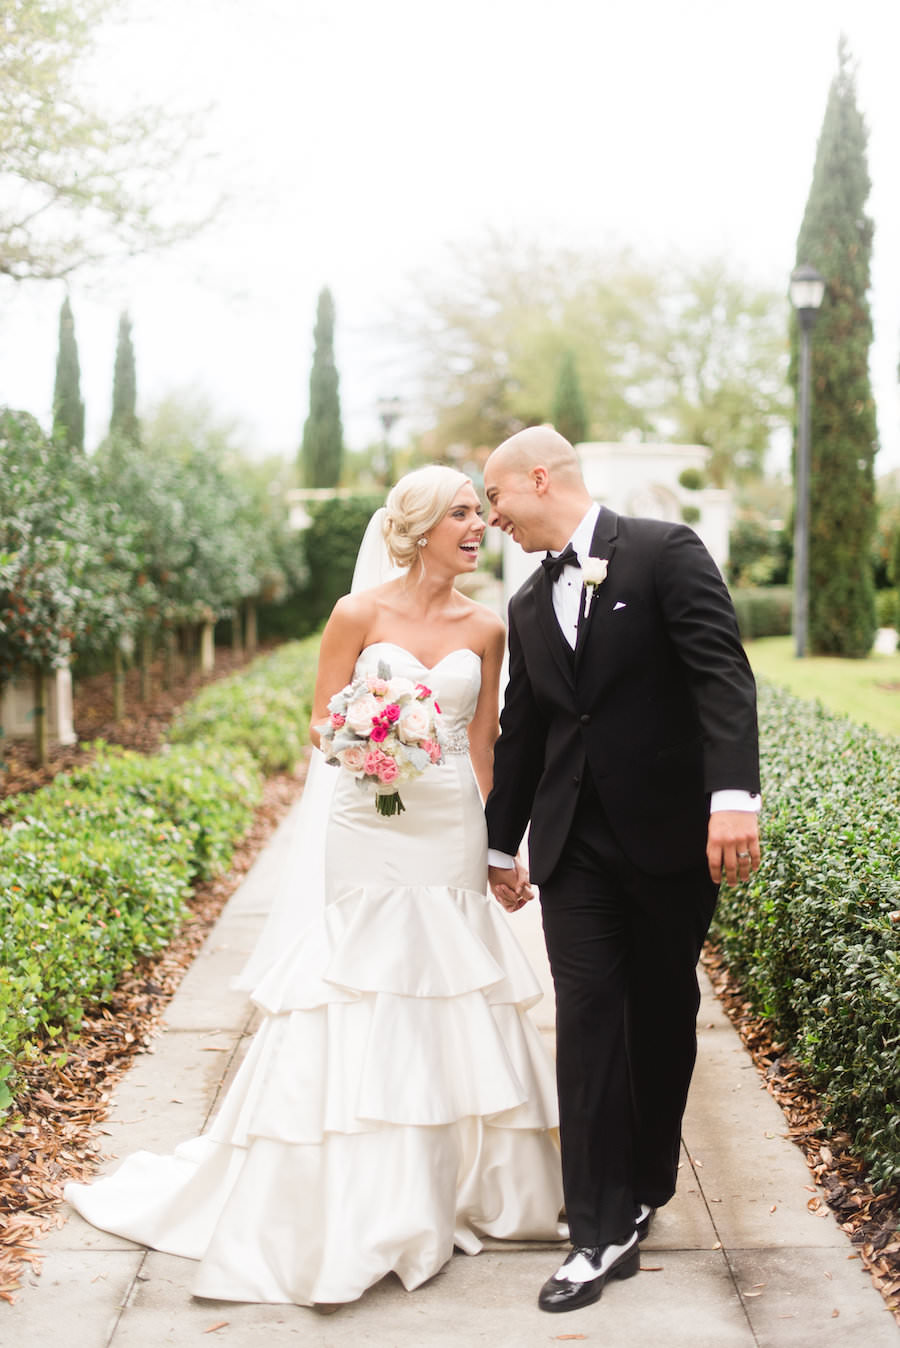 Bride and Groom Garden Wedding Portrait | Tampa Country Club Wedding Venue The Palmetto Club